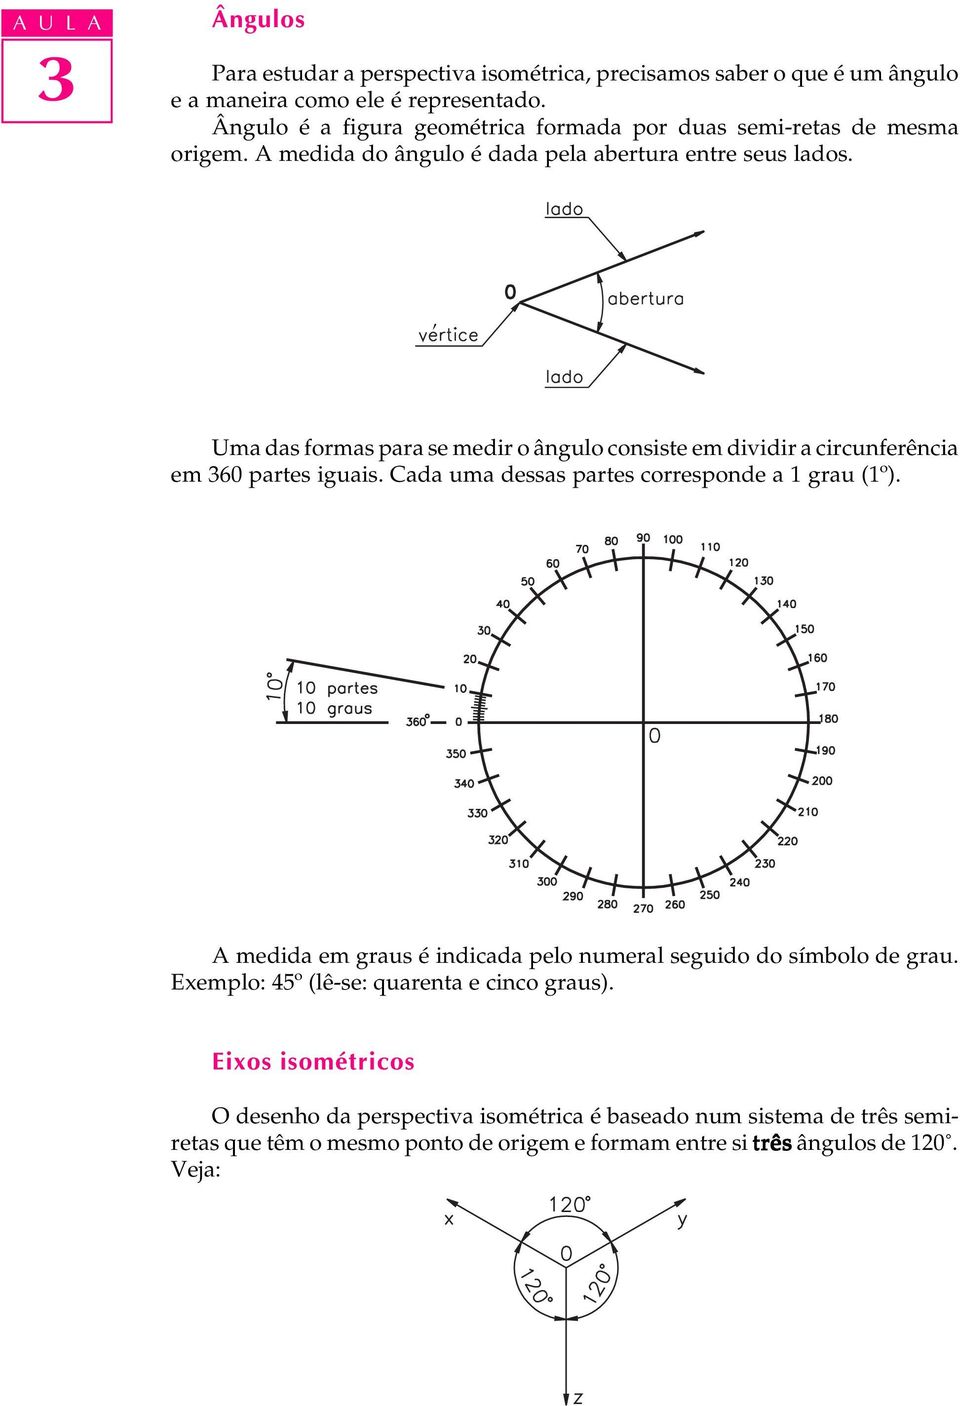 ' Uma das formas para se medir o ângulo consiste em dividir a circunferência em 60 partes iguais. Cada uma dessas partes corresponde a 1 grau (1º).